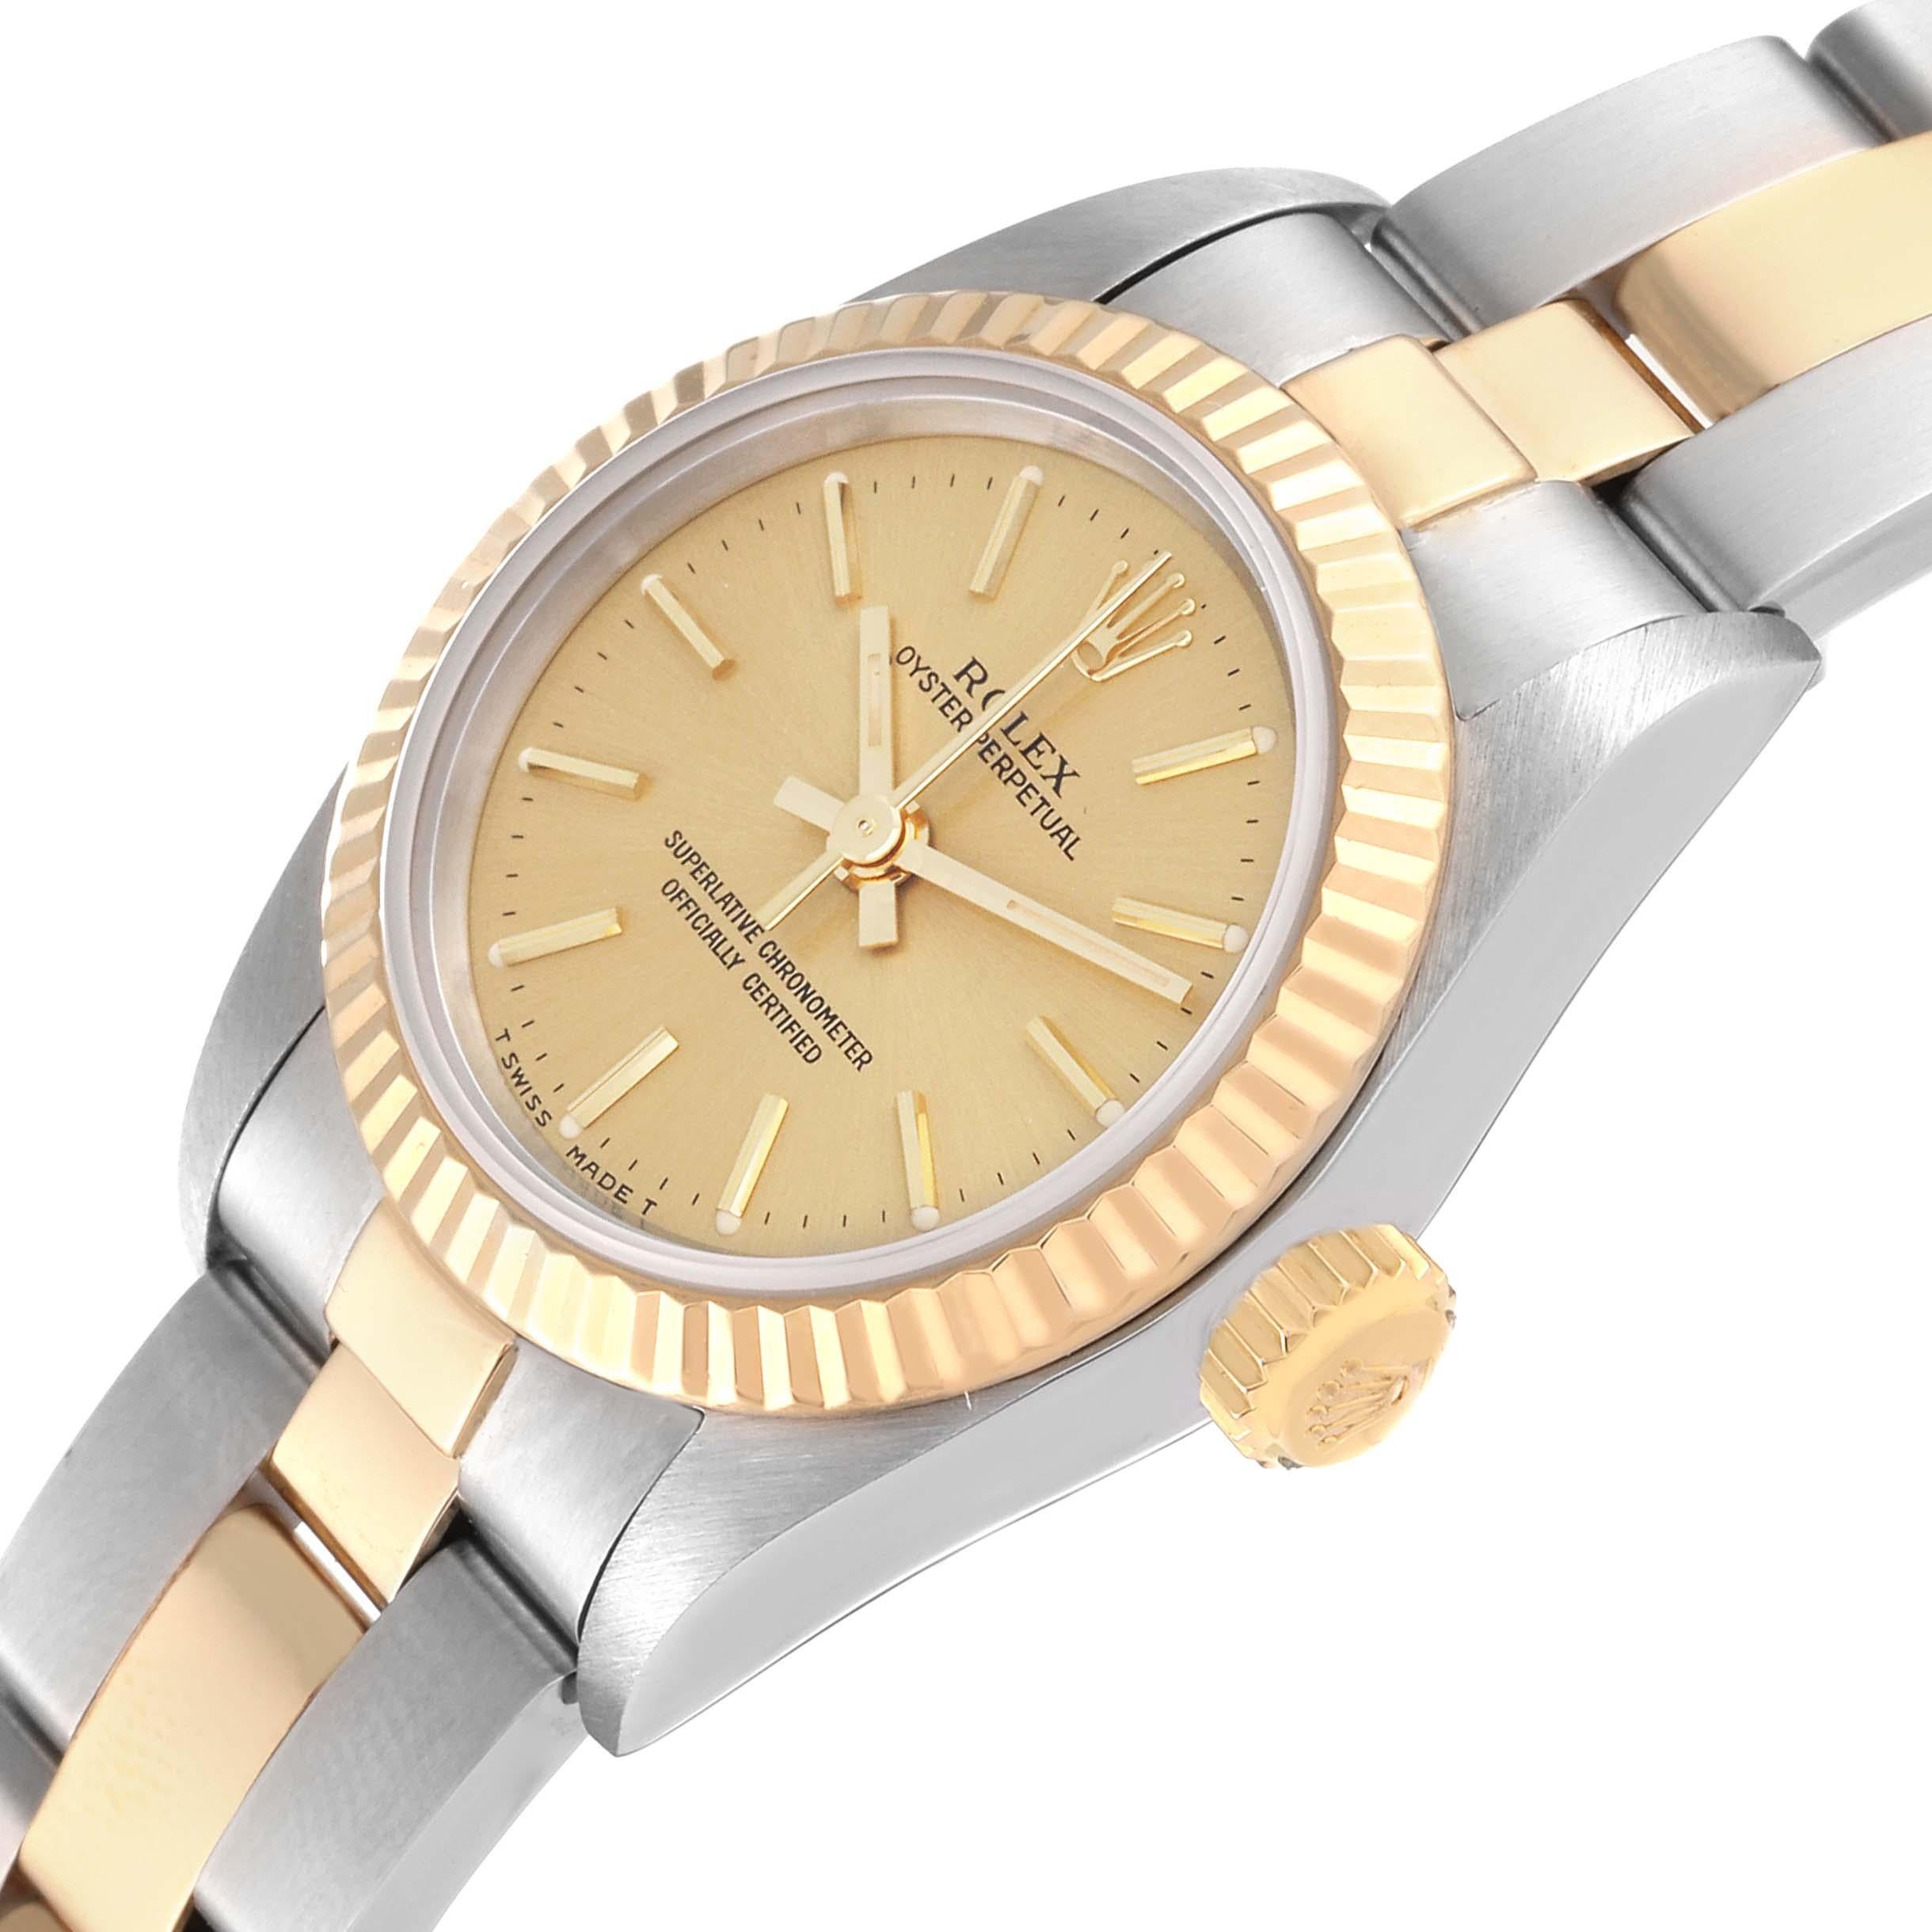 Rolex Oyster Perpetual Steel Yellow Gold Ladies Watch 67193. Mouvement automatique à remontage automatique, officiellement certifié chronomètre. Boîtier oyster en acier inoxydable de 24.0 mm de diamètre. Logo Rolex sur une couronne en or jaune 18k.